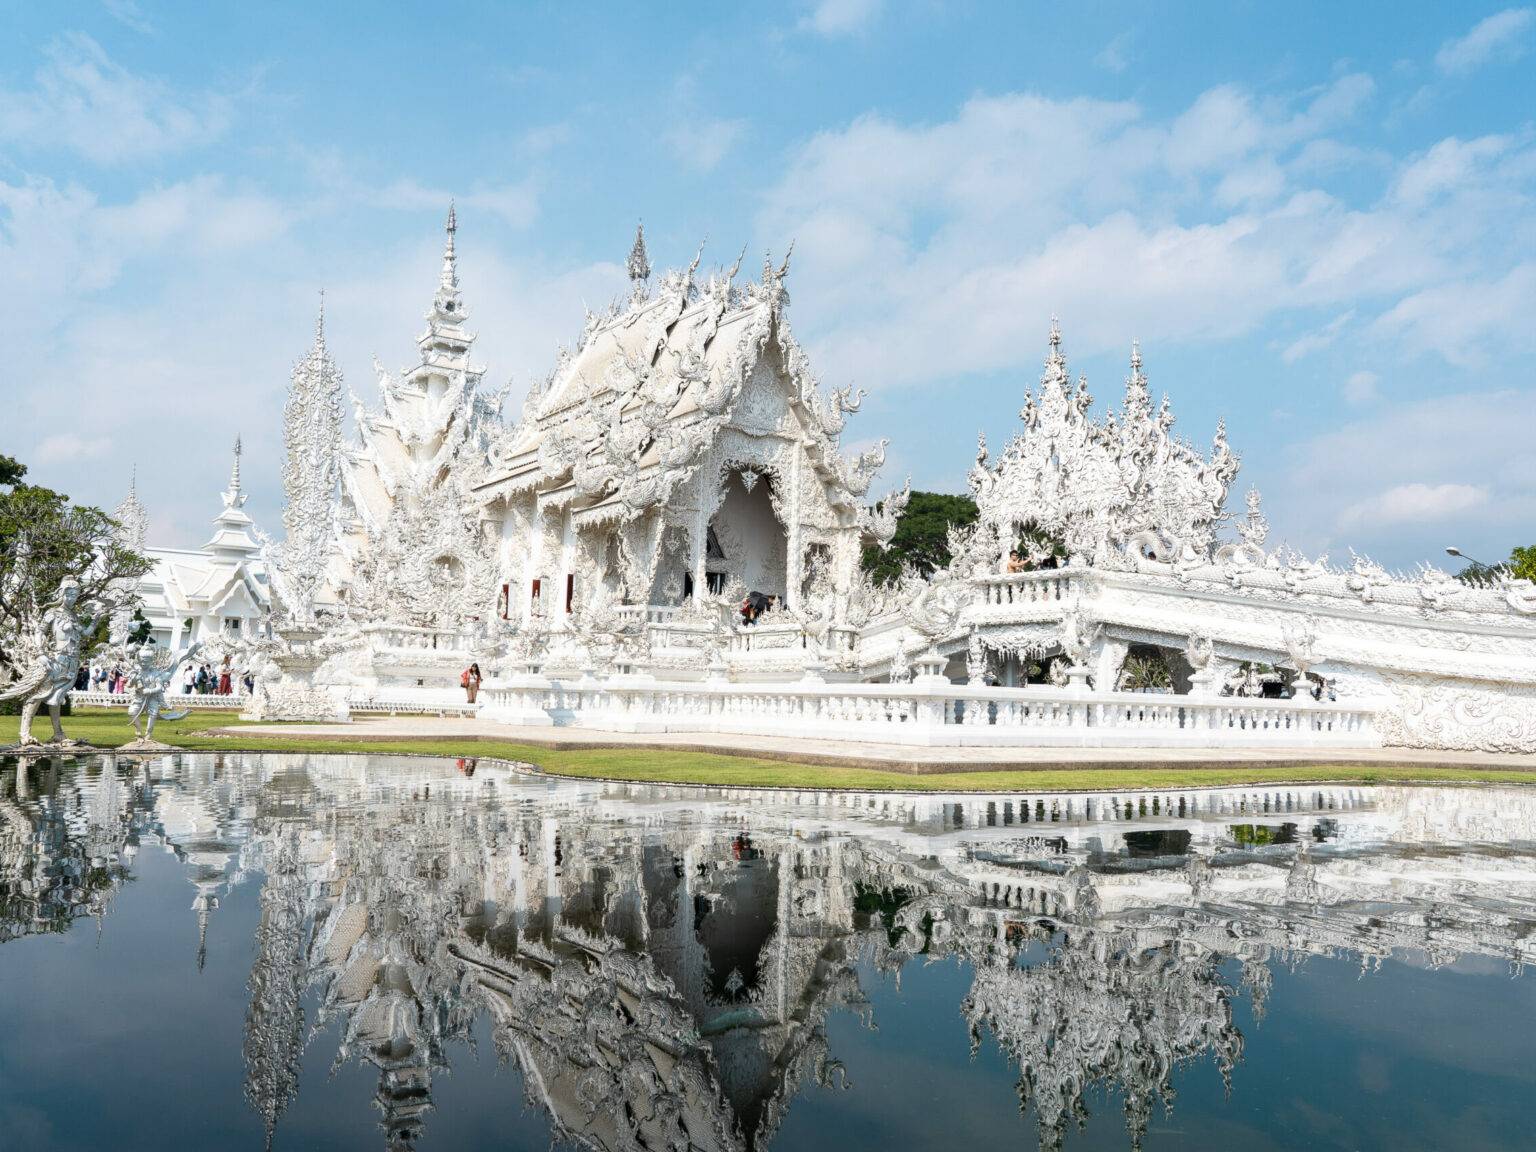 Der weiße Tempel in Chiang Rai spiegelt sich im Wasser des Sees.